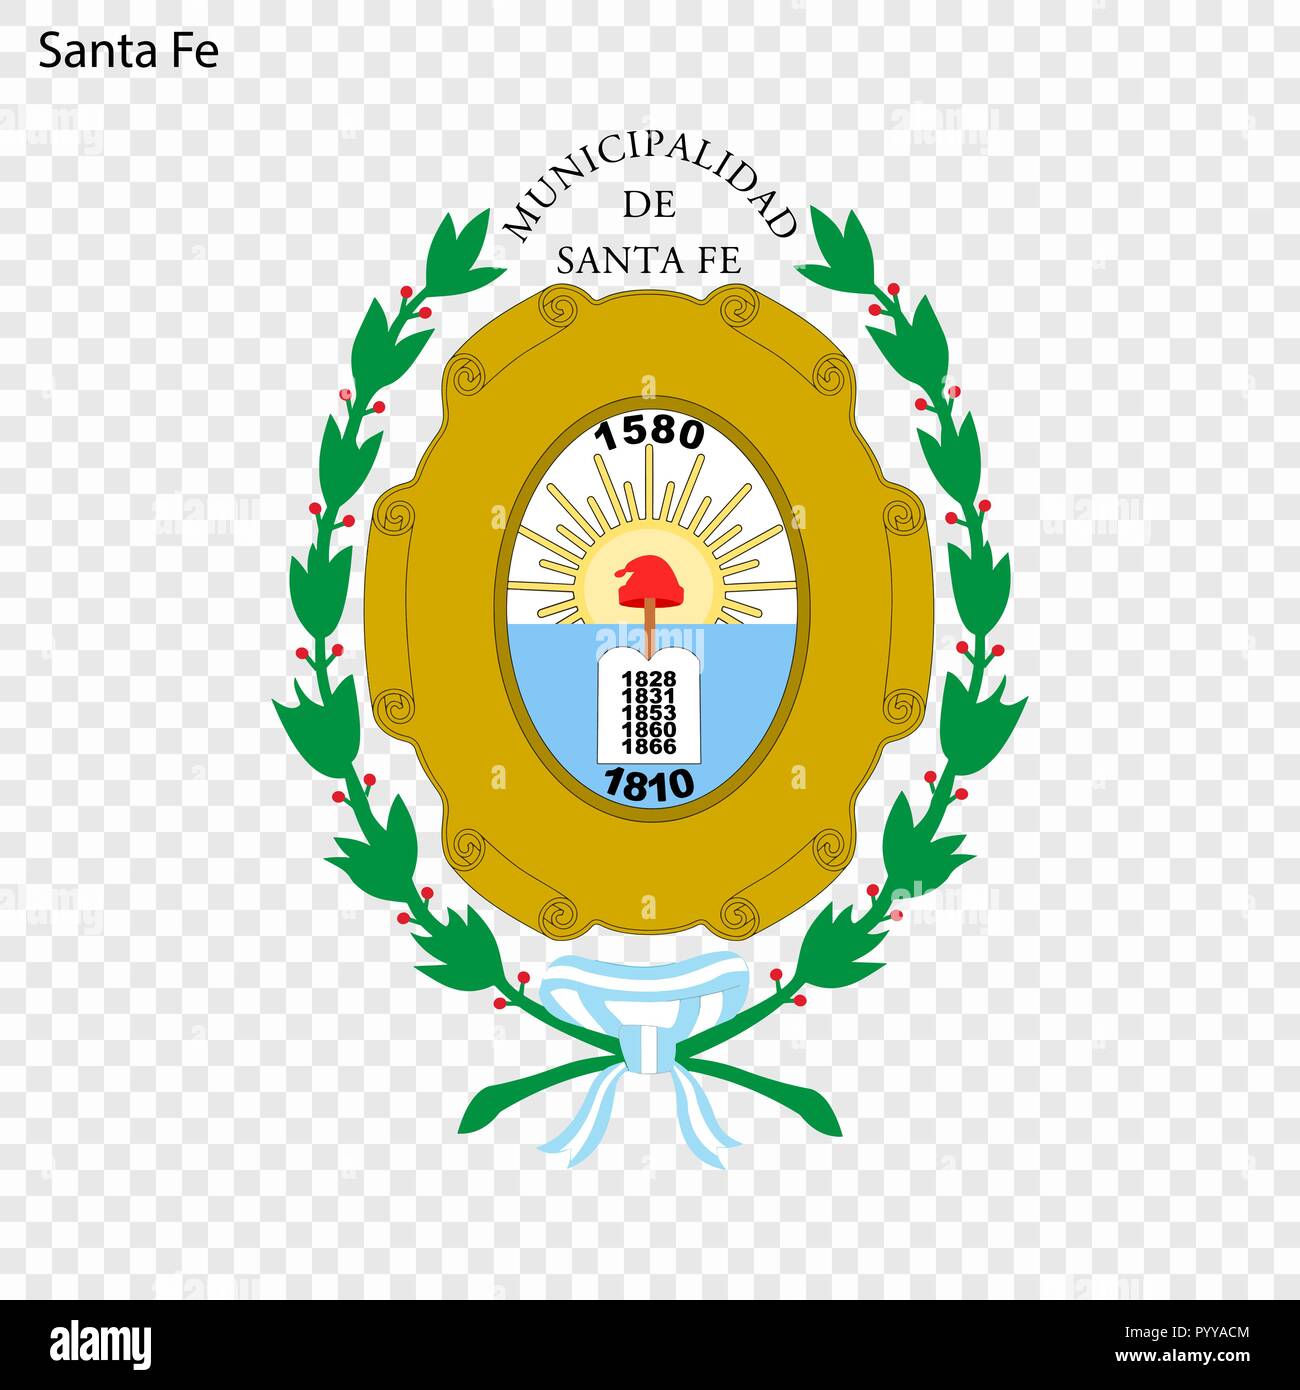 Emblem of Santa Fe de la Vera Cruz. City of Argentina. Vector illustration Stock Vector